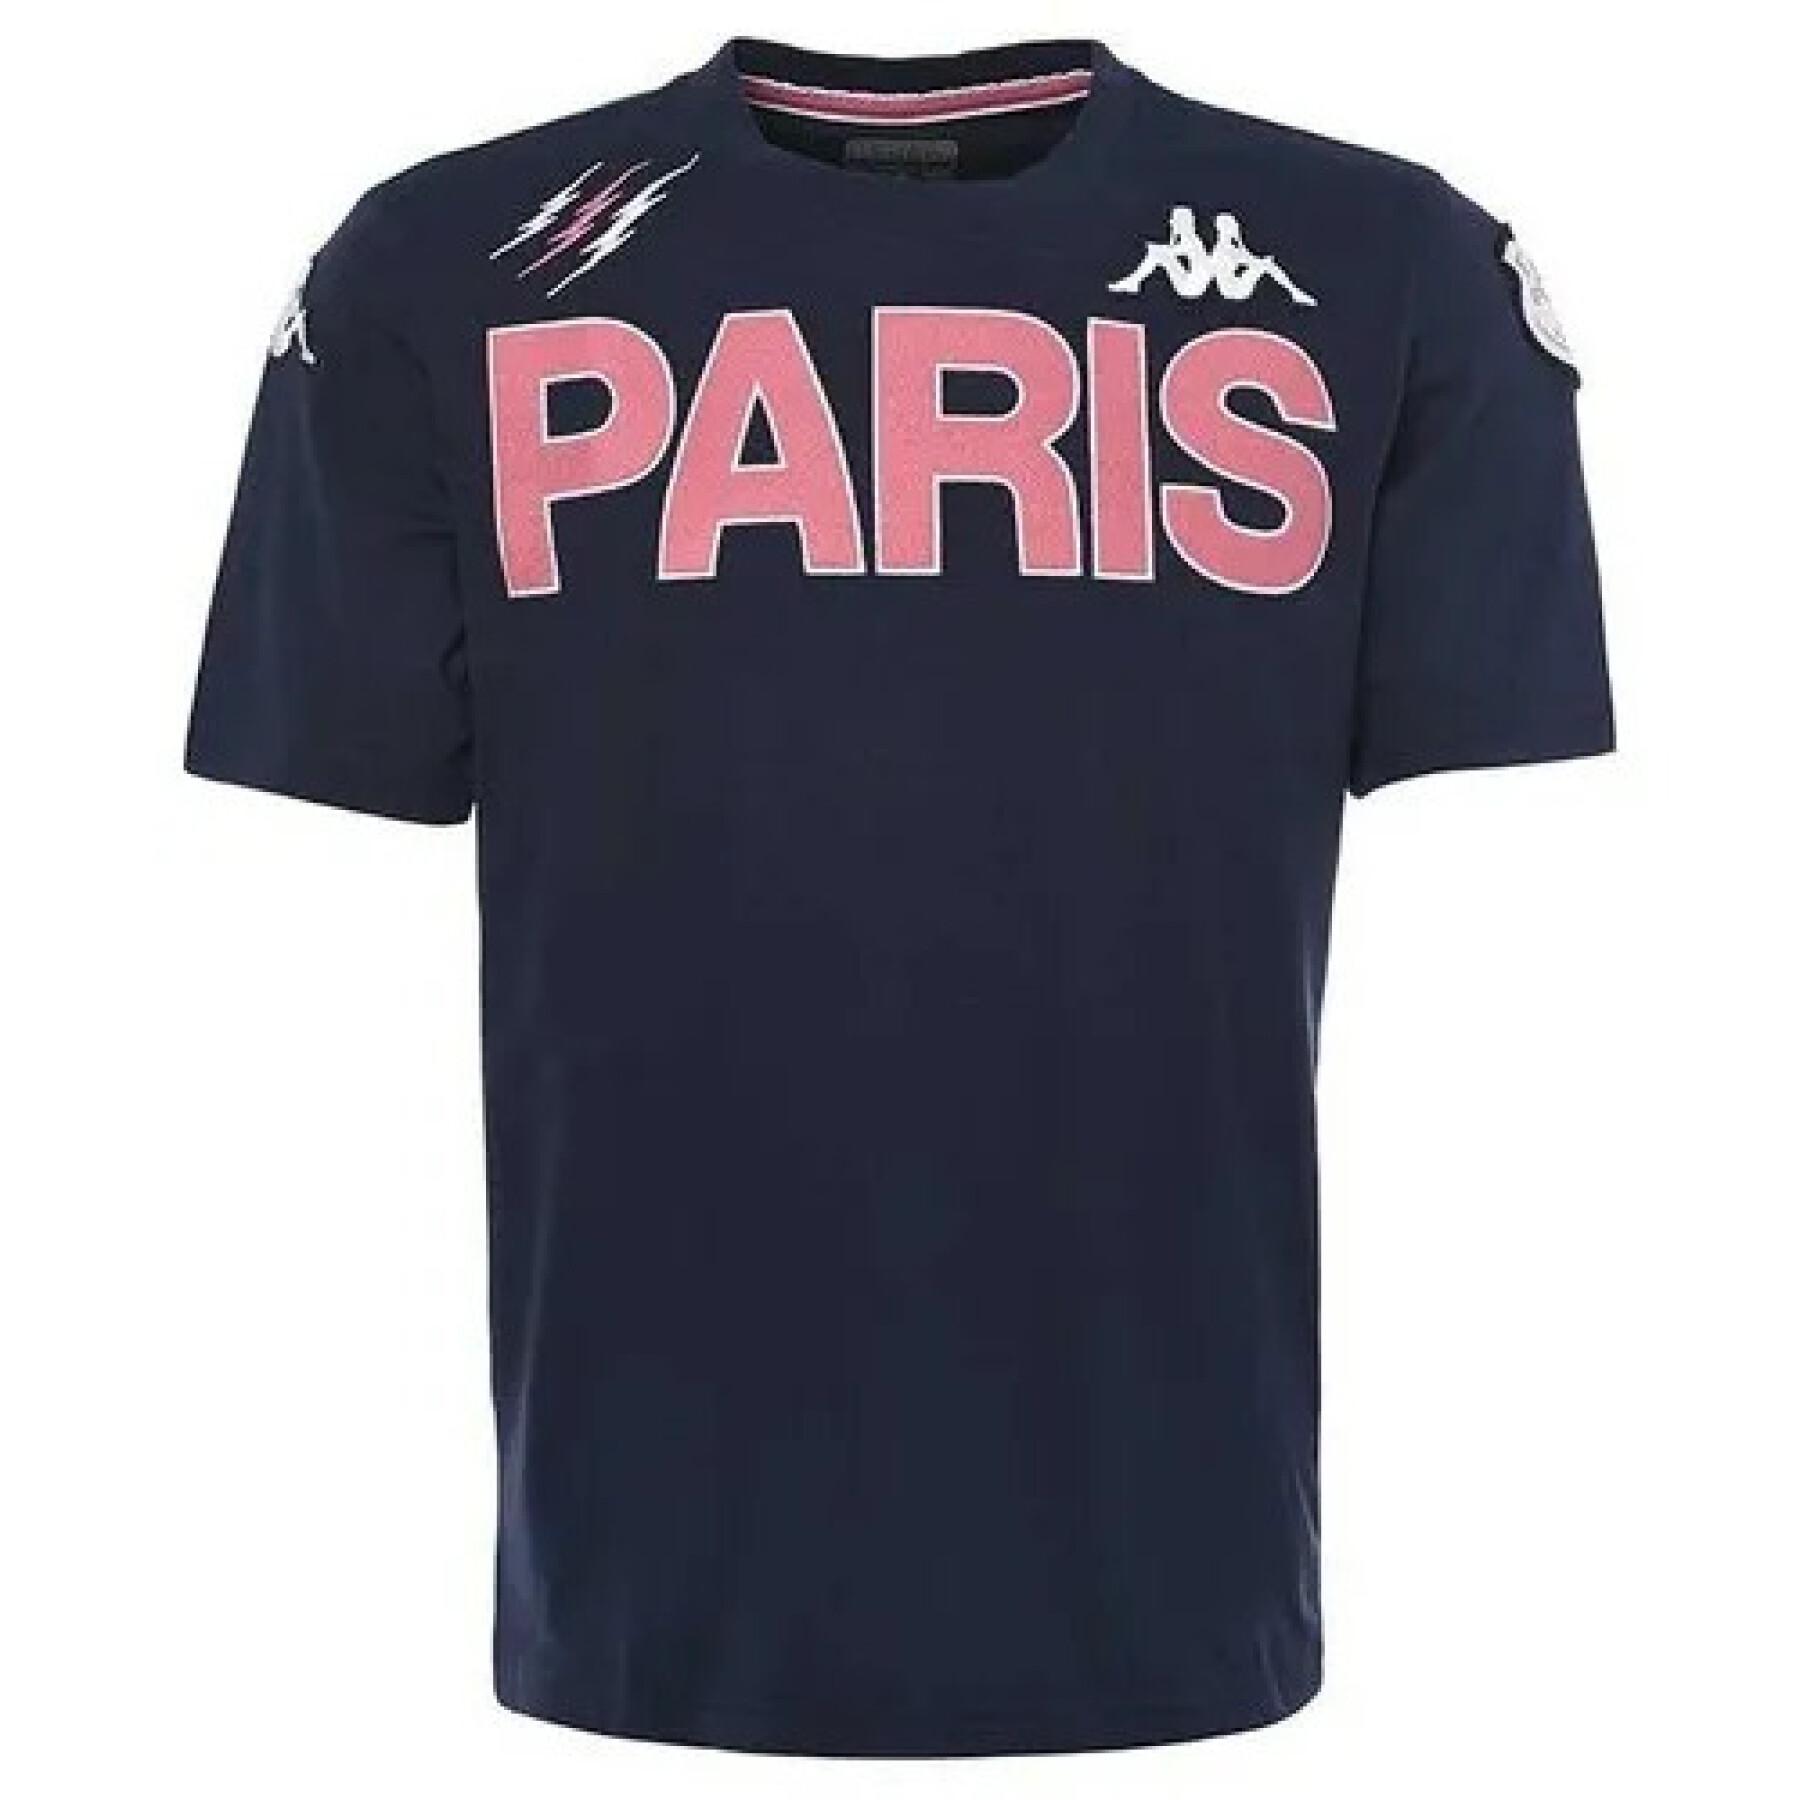 T-shirt kind eroi tee Stade Français Paris